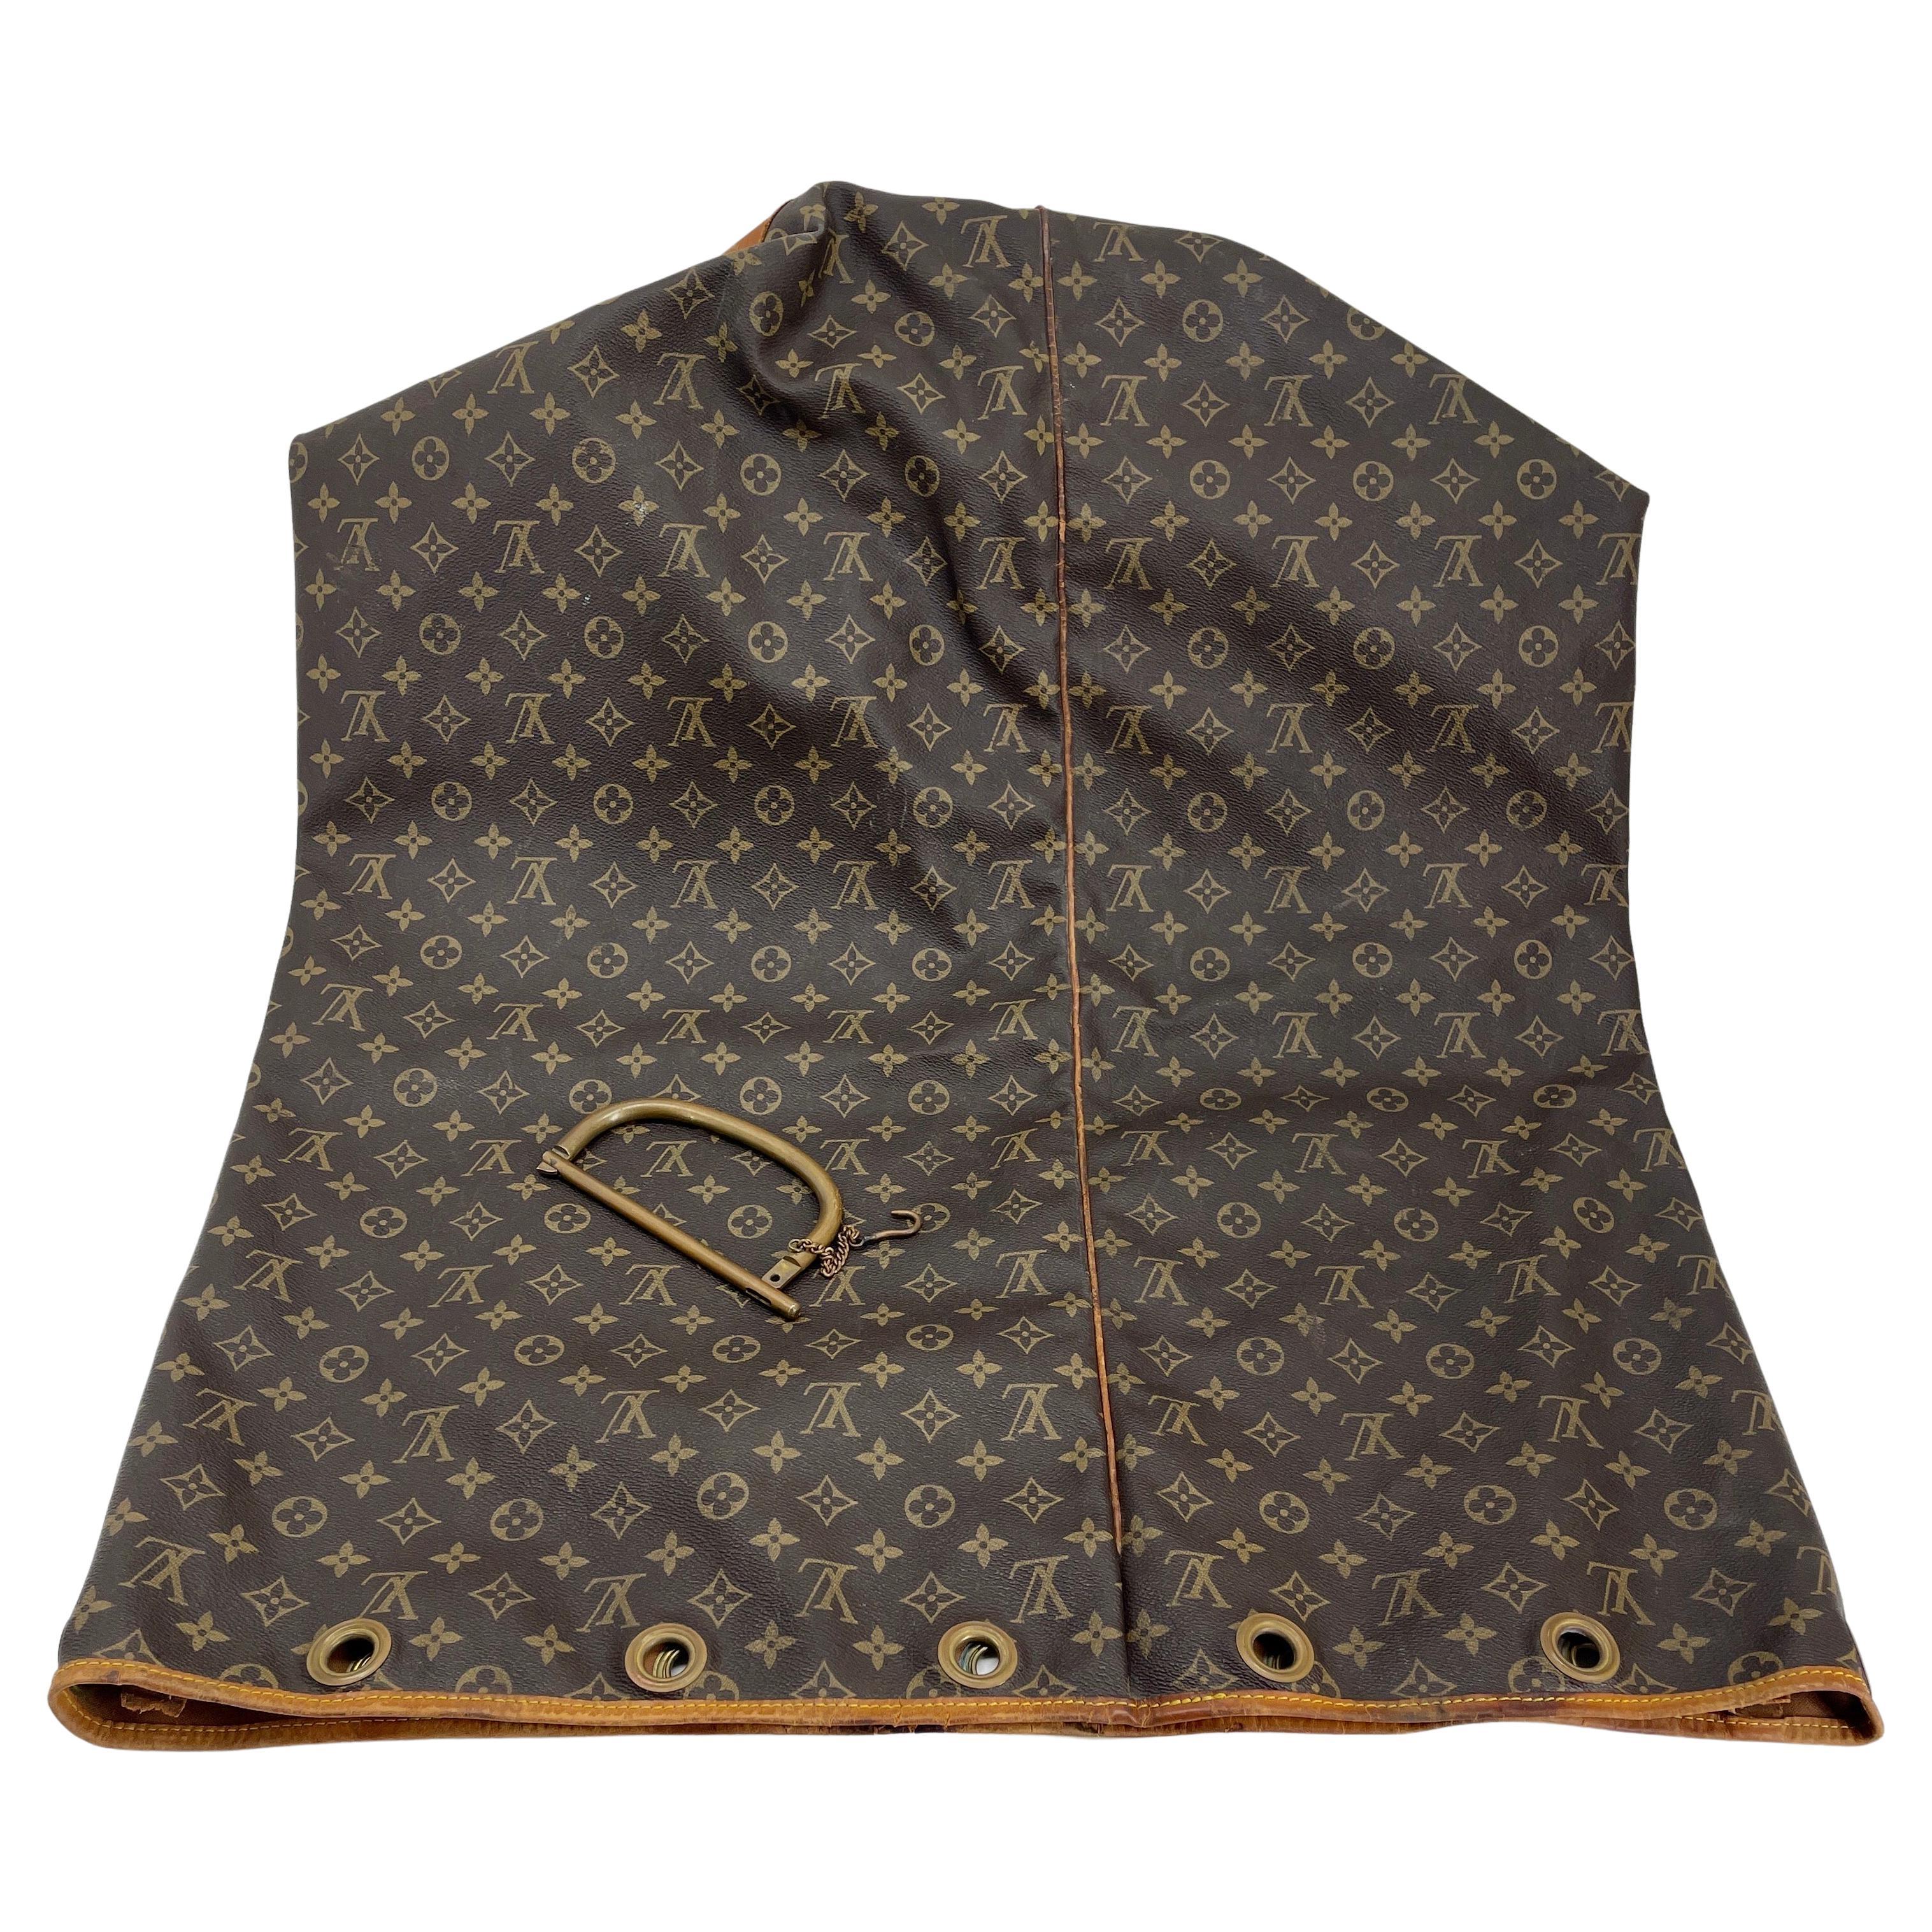 Extra Large Sac Marin XL Duffle Bag by Louis Vuitton.

Voyagez avec style grâce à ce fabuleux Marin. Confectionné à partir de la toile monogramme emblématique de la marque, ce sac de sport est garni de cuir Vachetta. L'intérieur est doublé en toile